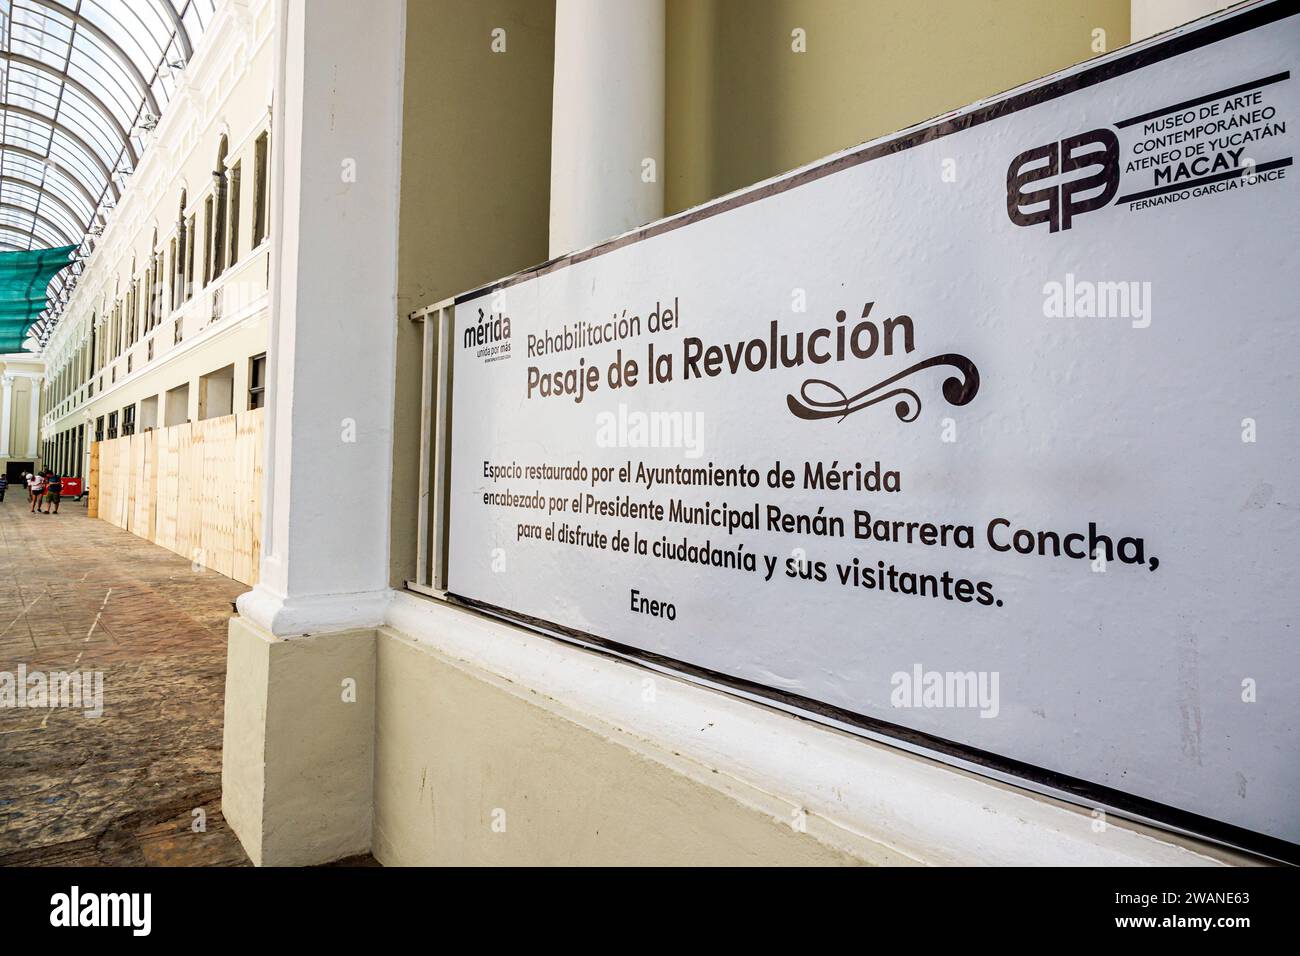 Merida Mexico, centro storico, Pasaaje de la Revolucion, passaggio della Rivoluzione, interni interni interni, indicazioni stradali, S. Foto Stock